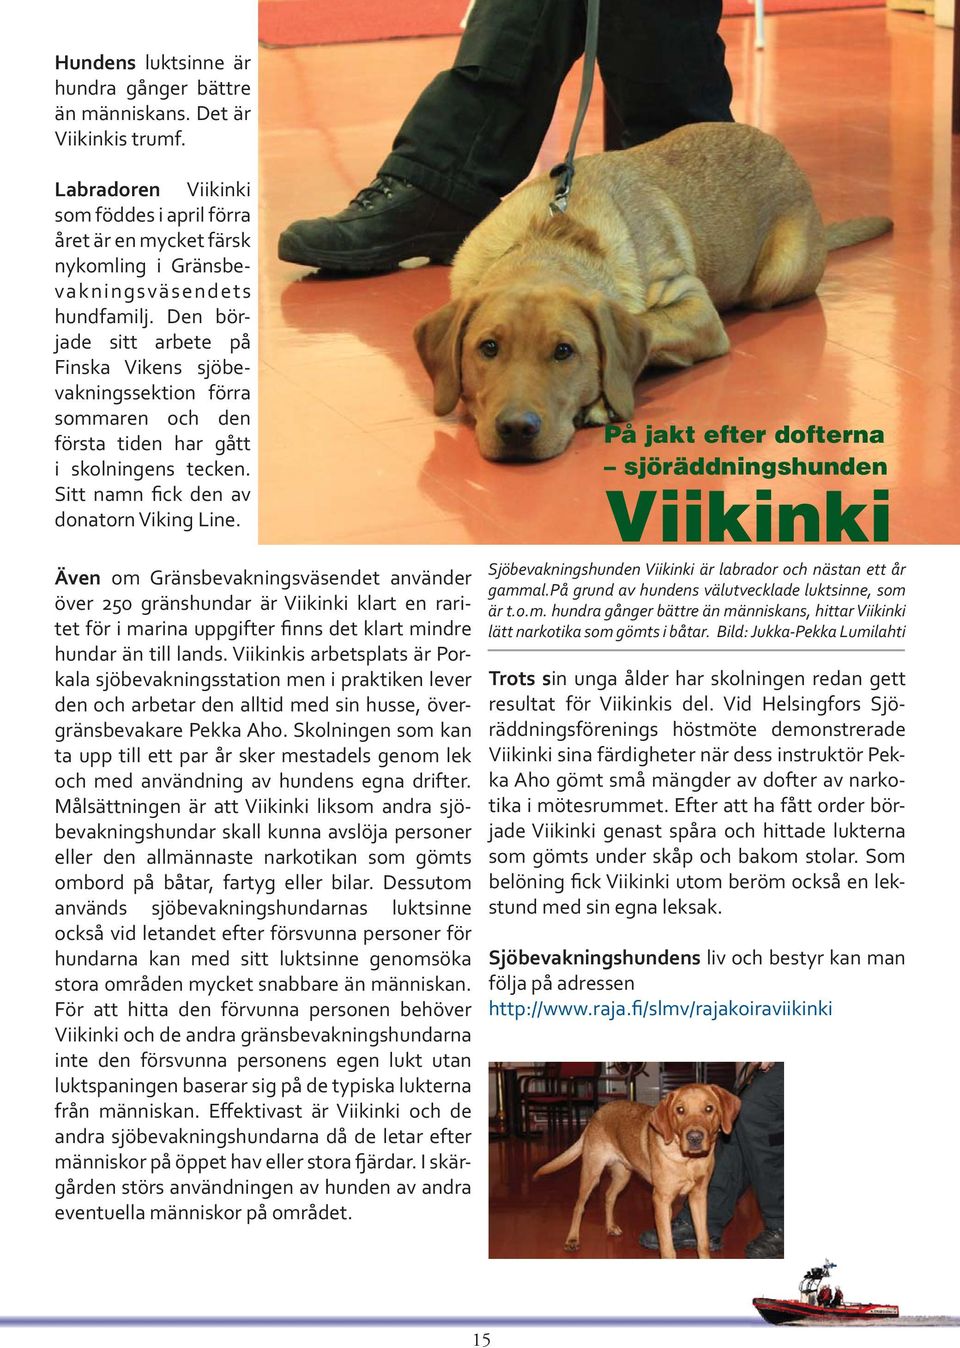 Även om Gränsbevakningsväsendet använder över 250 gränshundar är Viikinki klart en raritet för i marina uppgifter finns det klart mindre hundar än till lands.